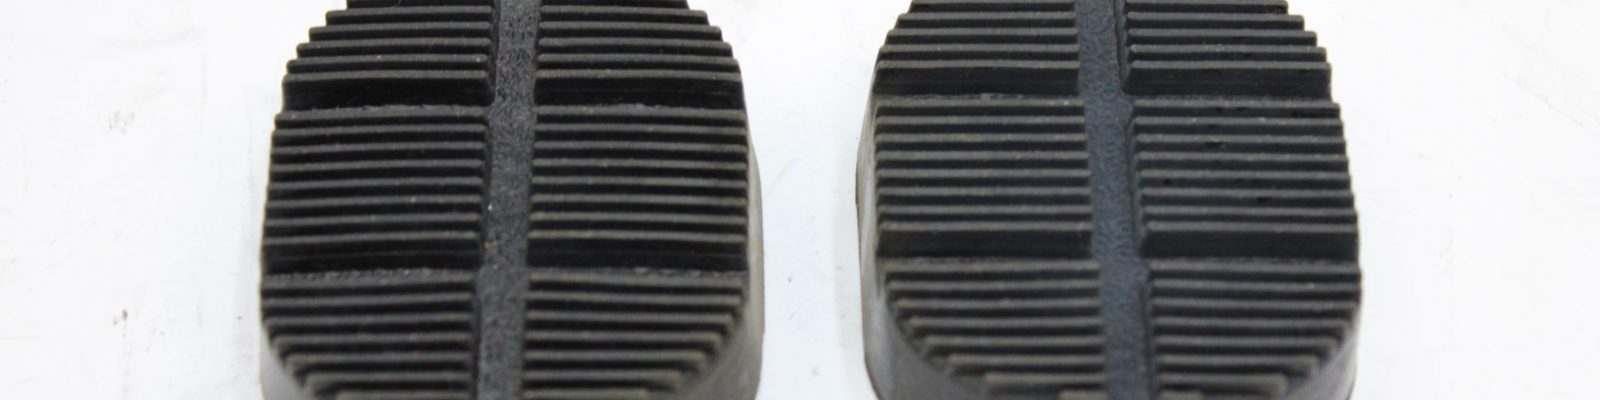 Fiat 1300 1500 C pedal pads clutch brake